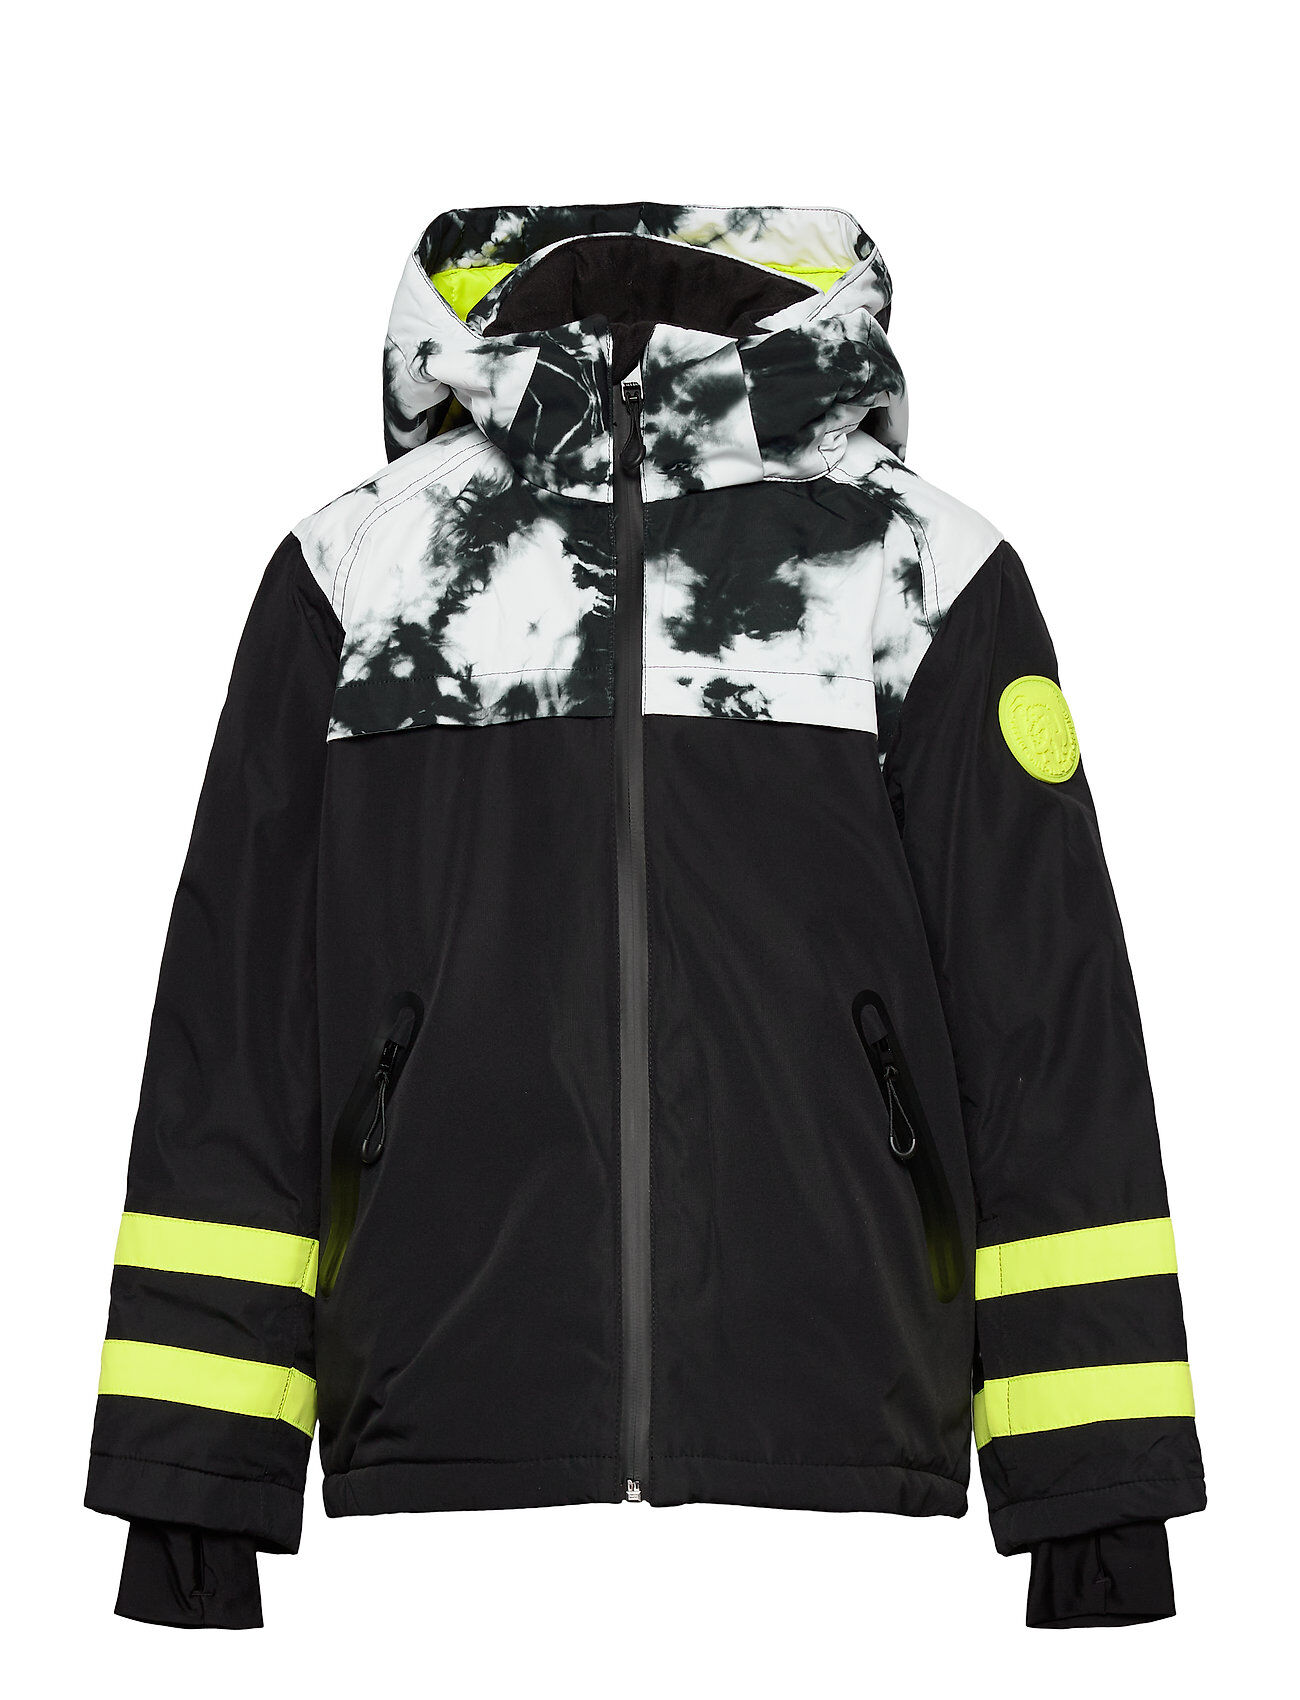 Diesel Jodel-Ski Jacket Outerwear Snow/ski Clothing Snow/ski Jacket Svart Diesel